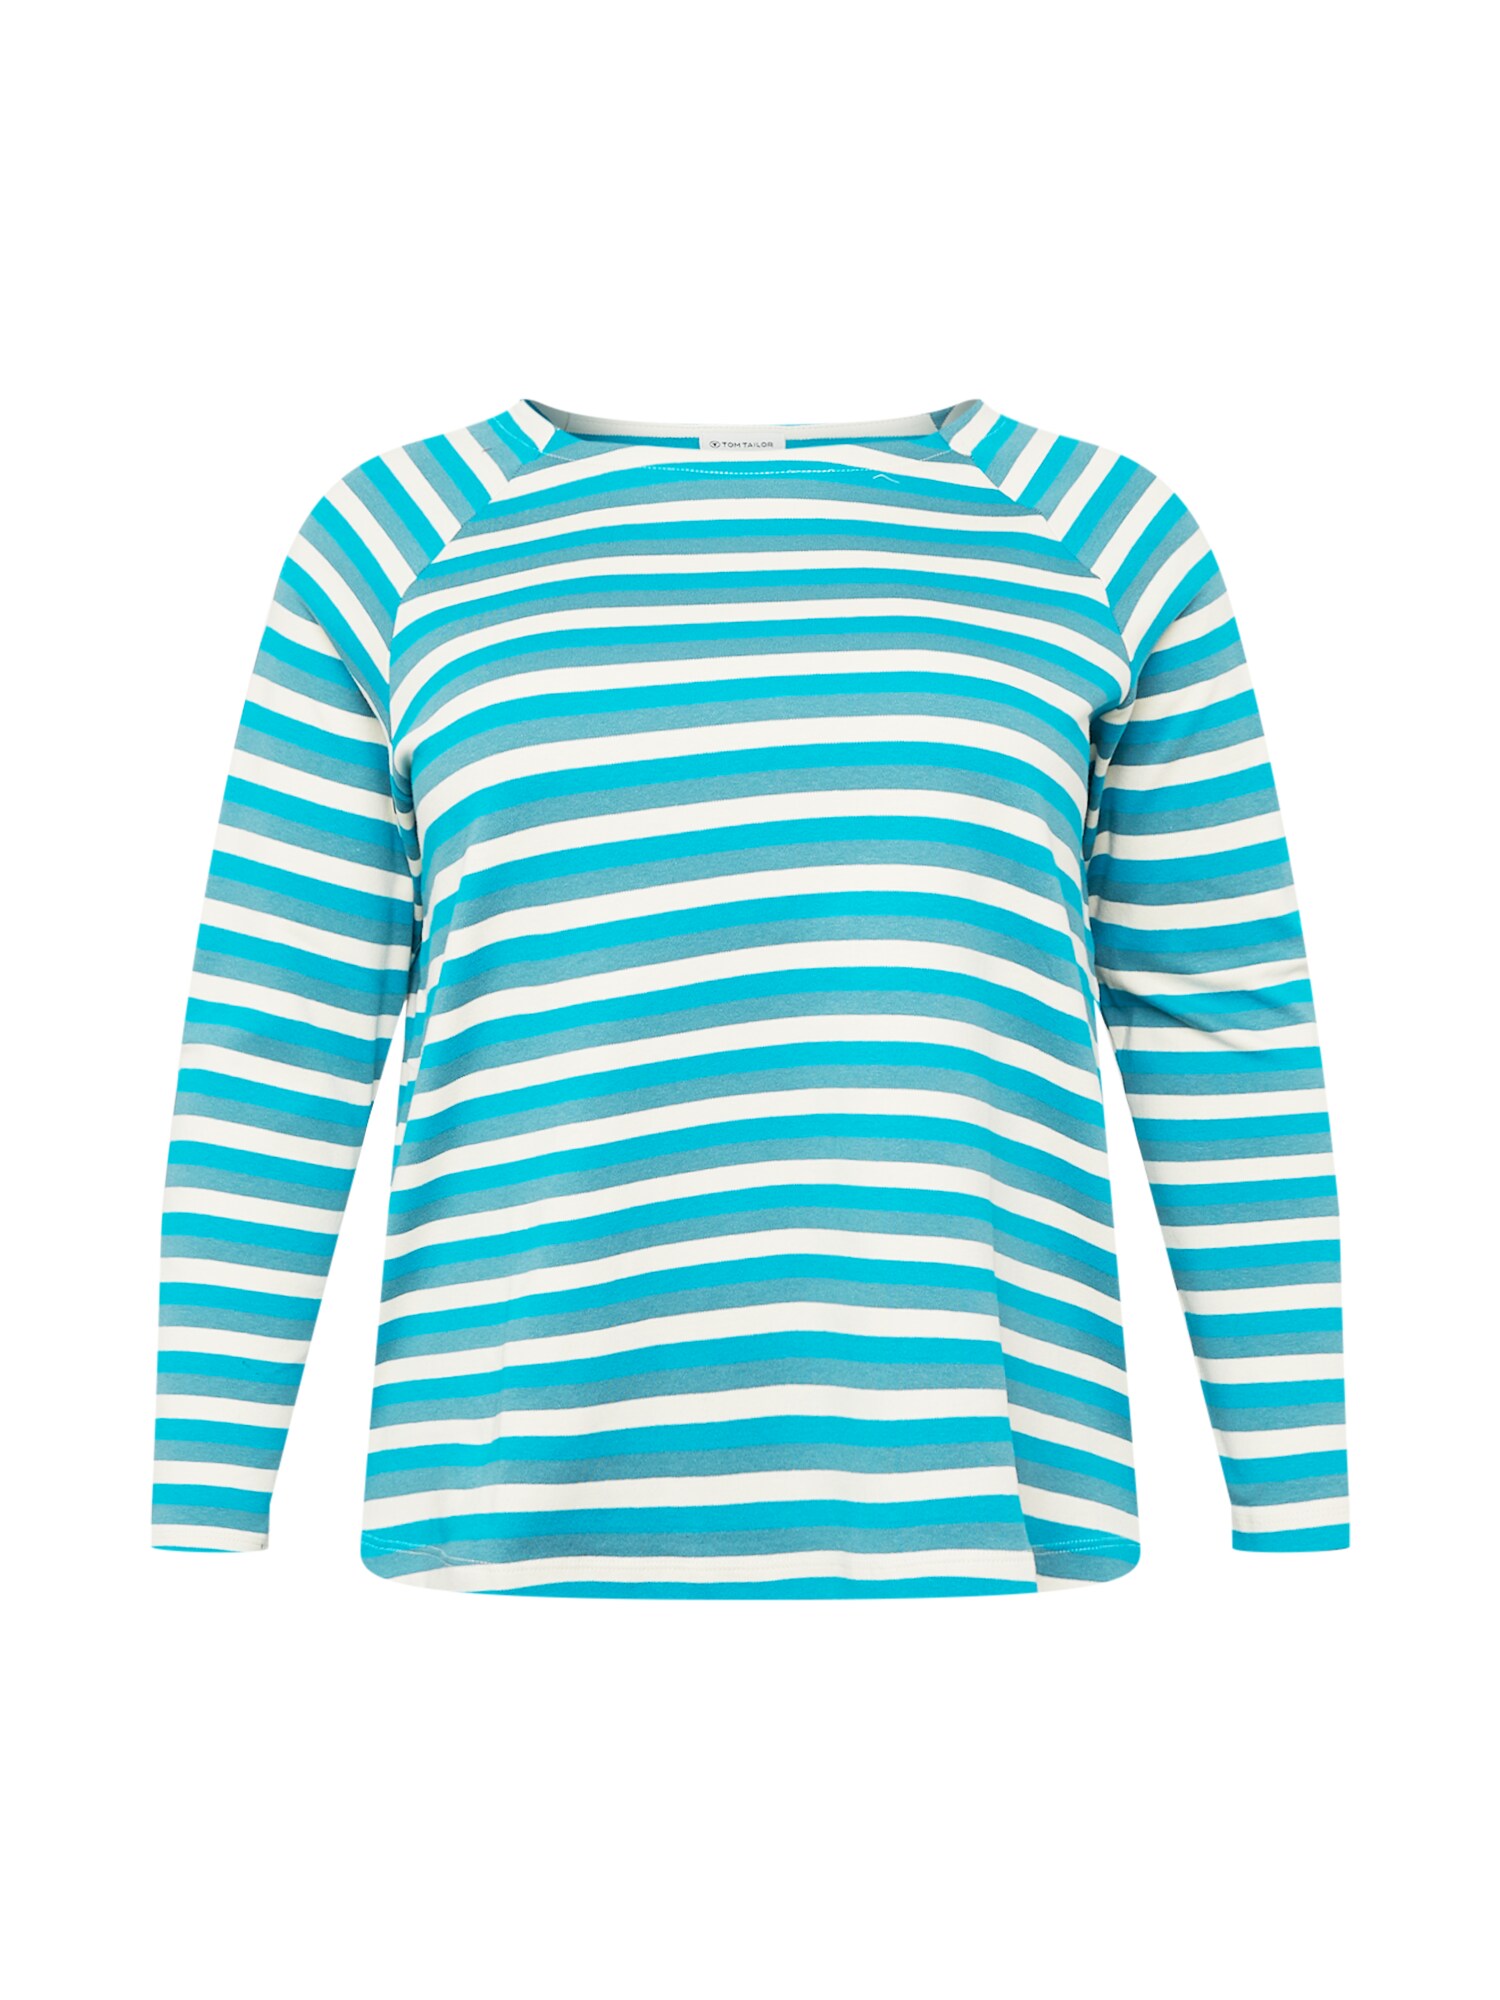 Tom Tailor Women + Marškinėliai turkio spalva / žalsvai mėlyna / balta